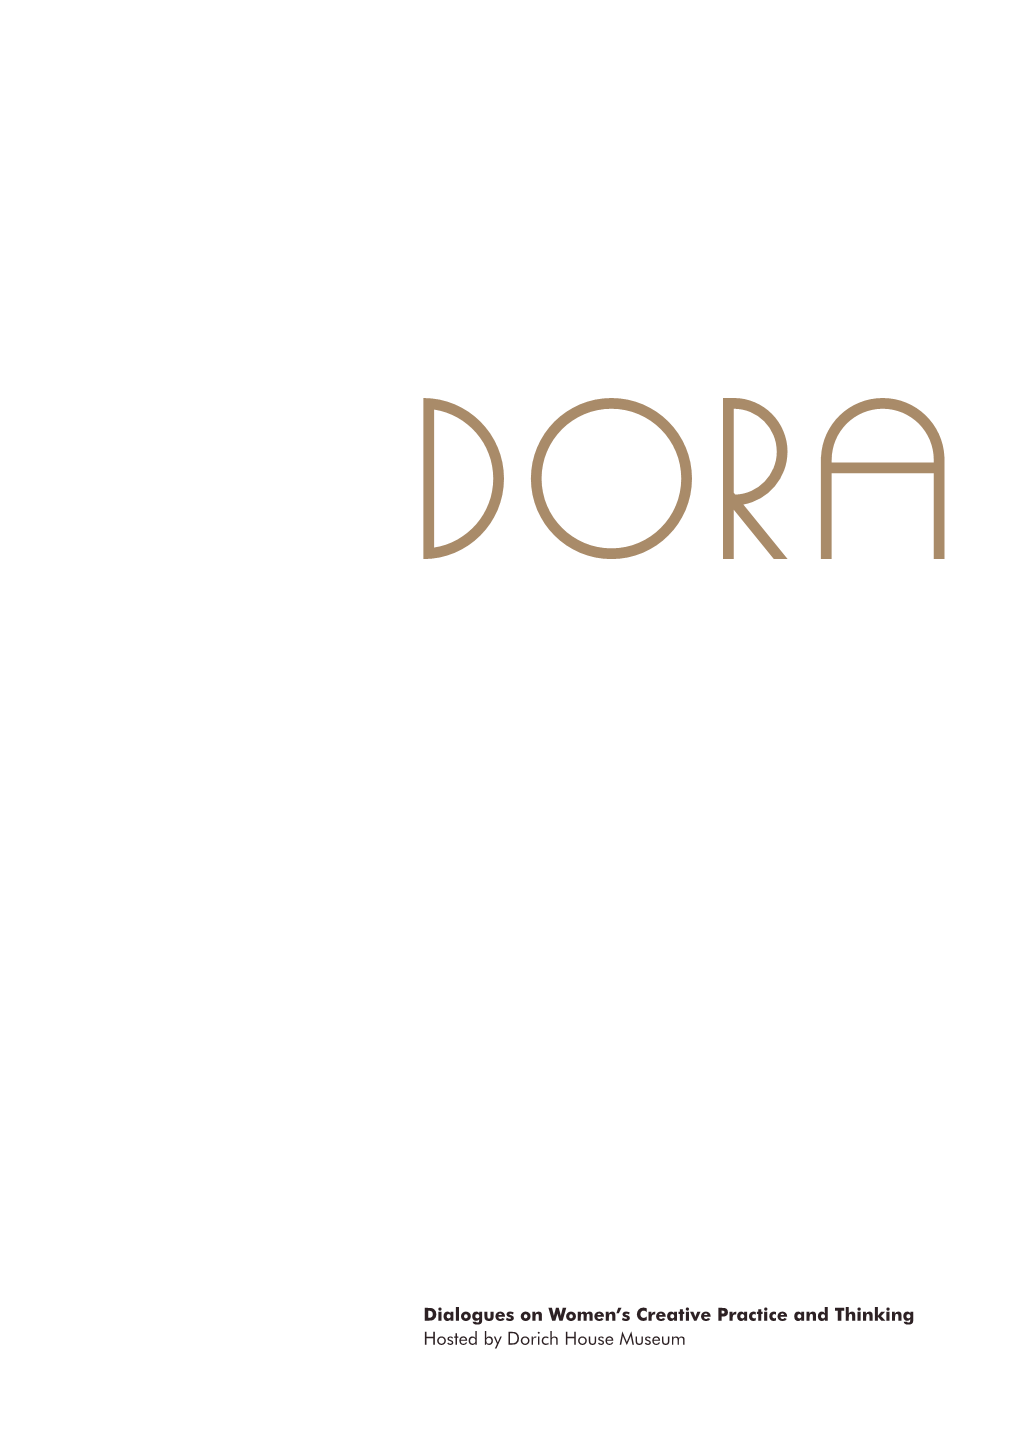 Dora: Foreword (PDF)